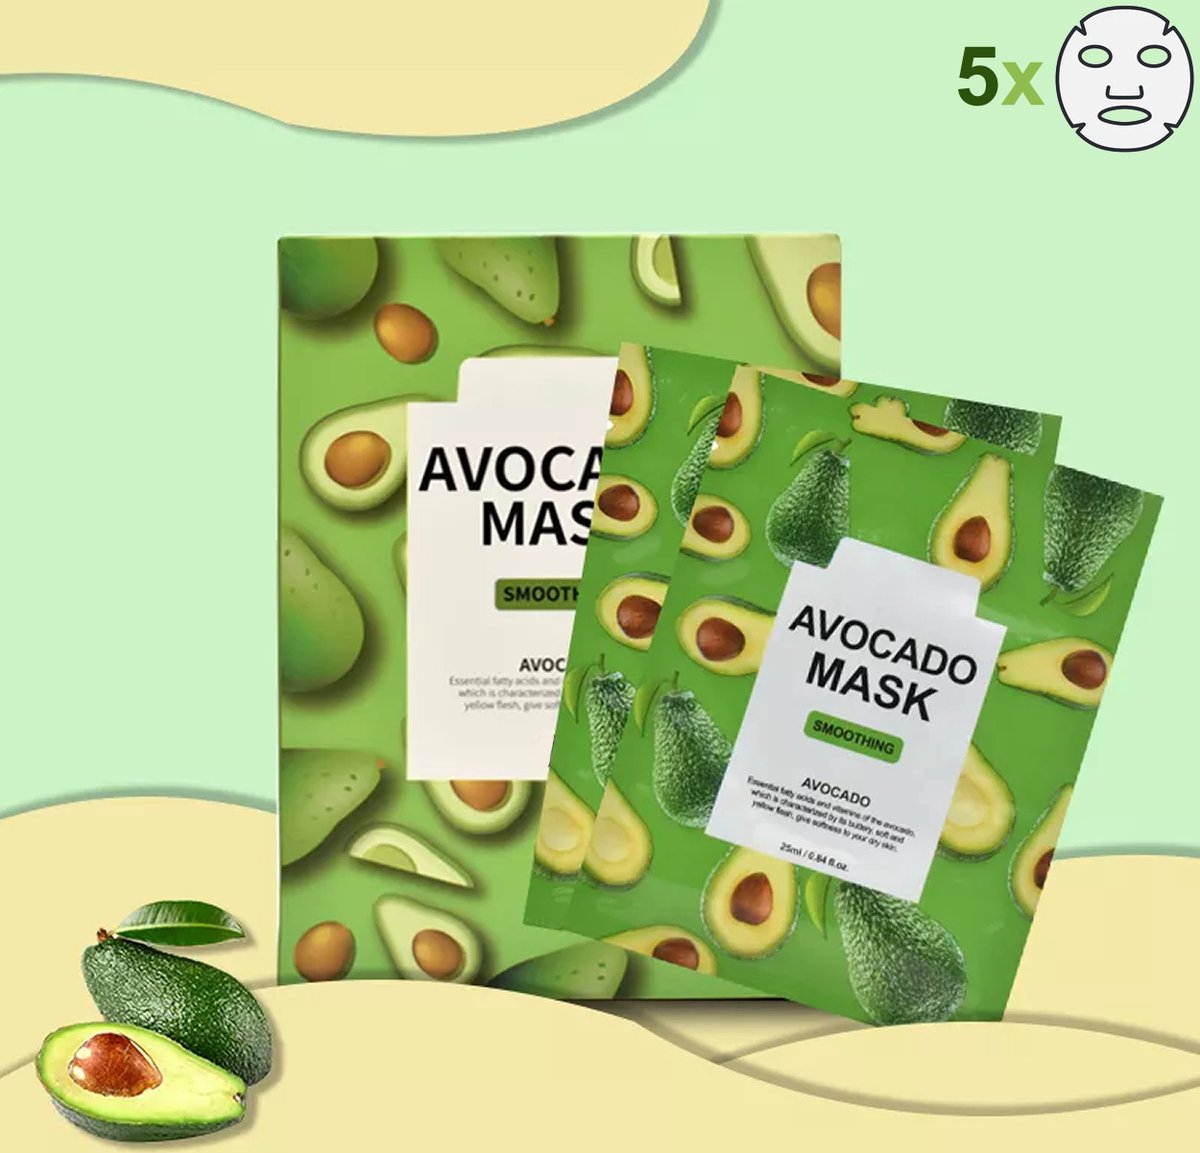 Summer Girl - Sheet Mask - Avocado - Gezichtsmasker - 5 stuks